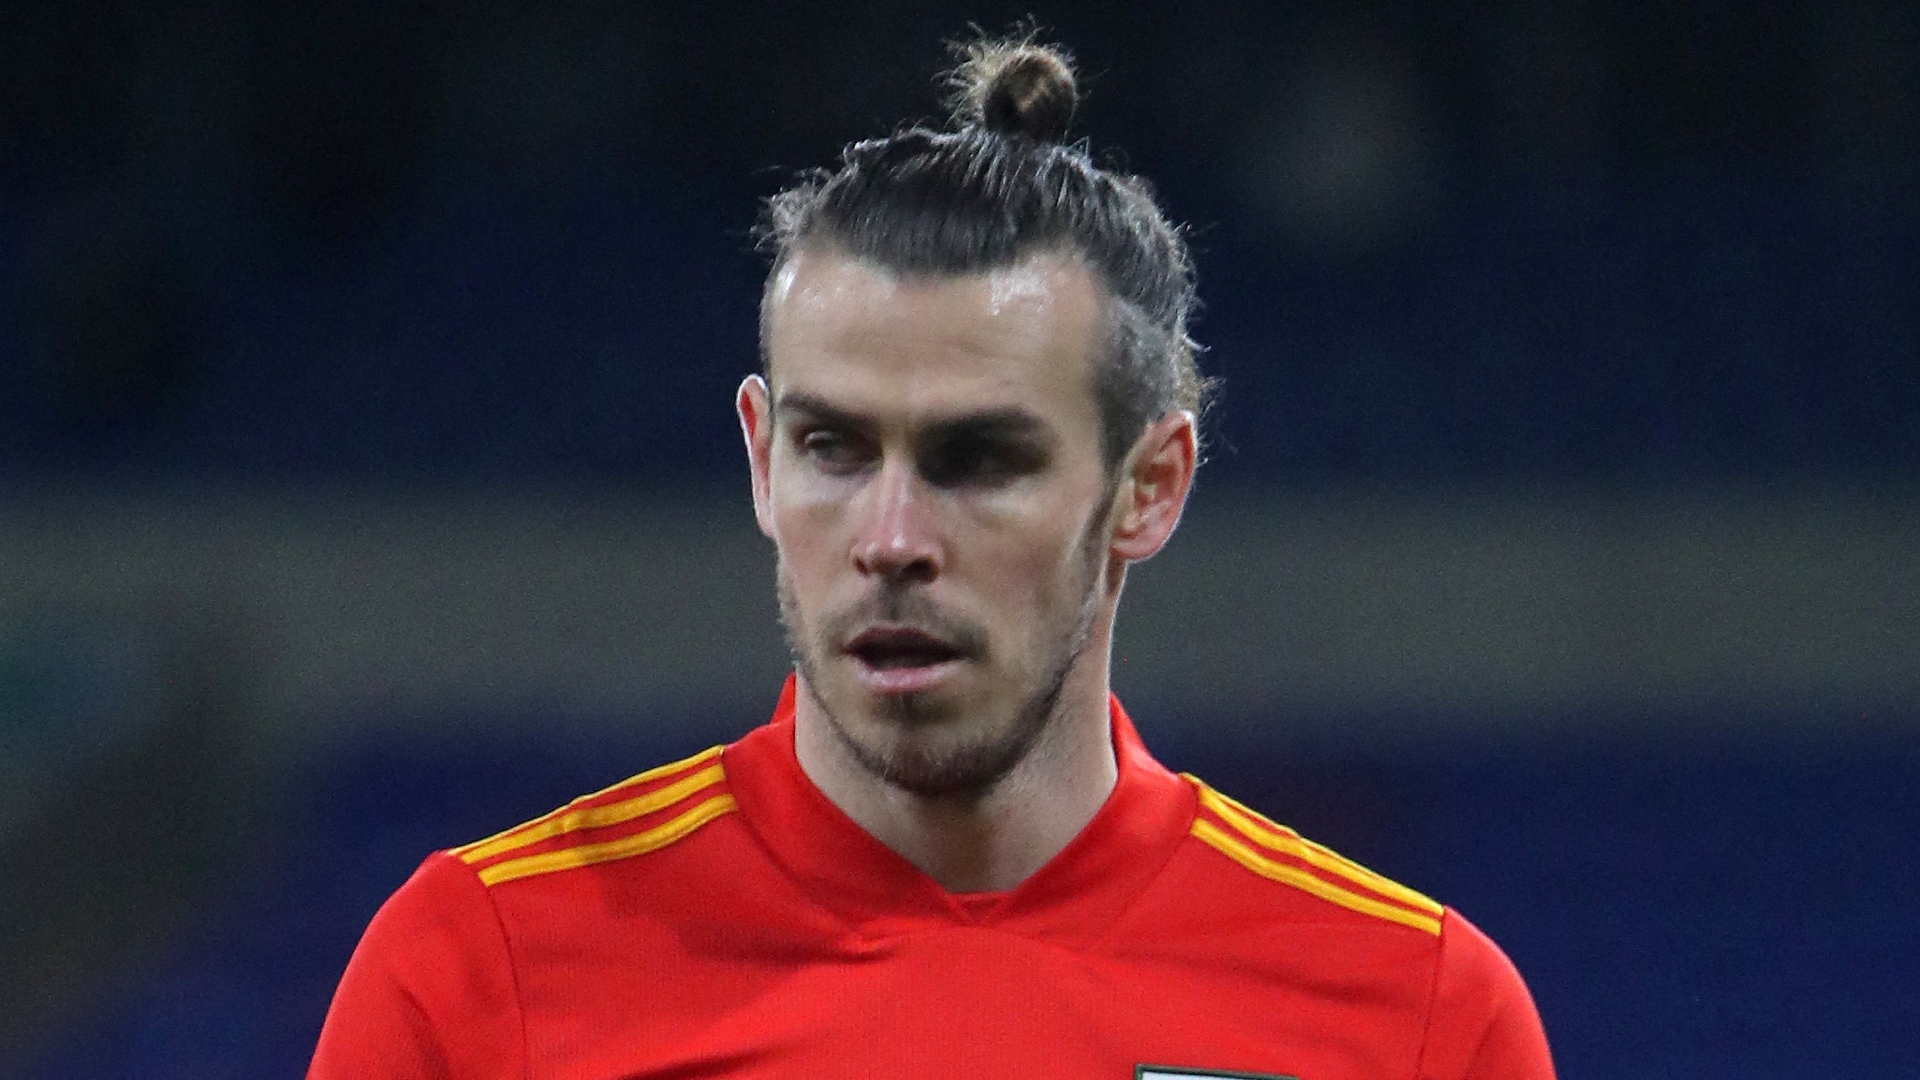 Pays de Galles - James Lawrence dresse le portrait de Gareth Bale